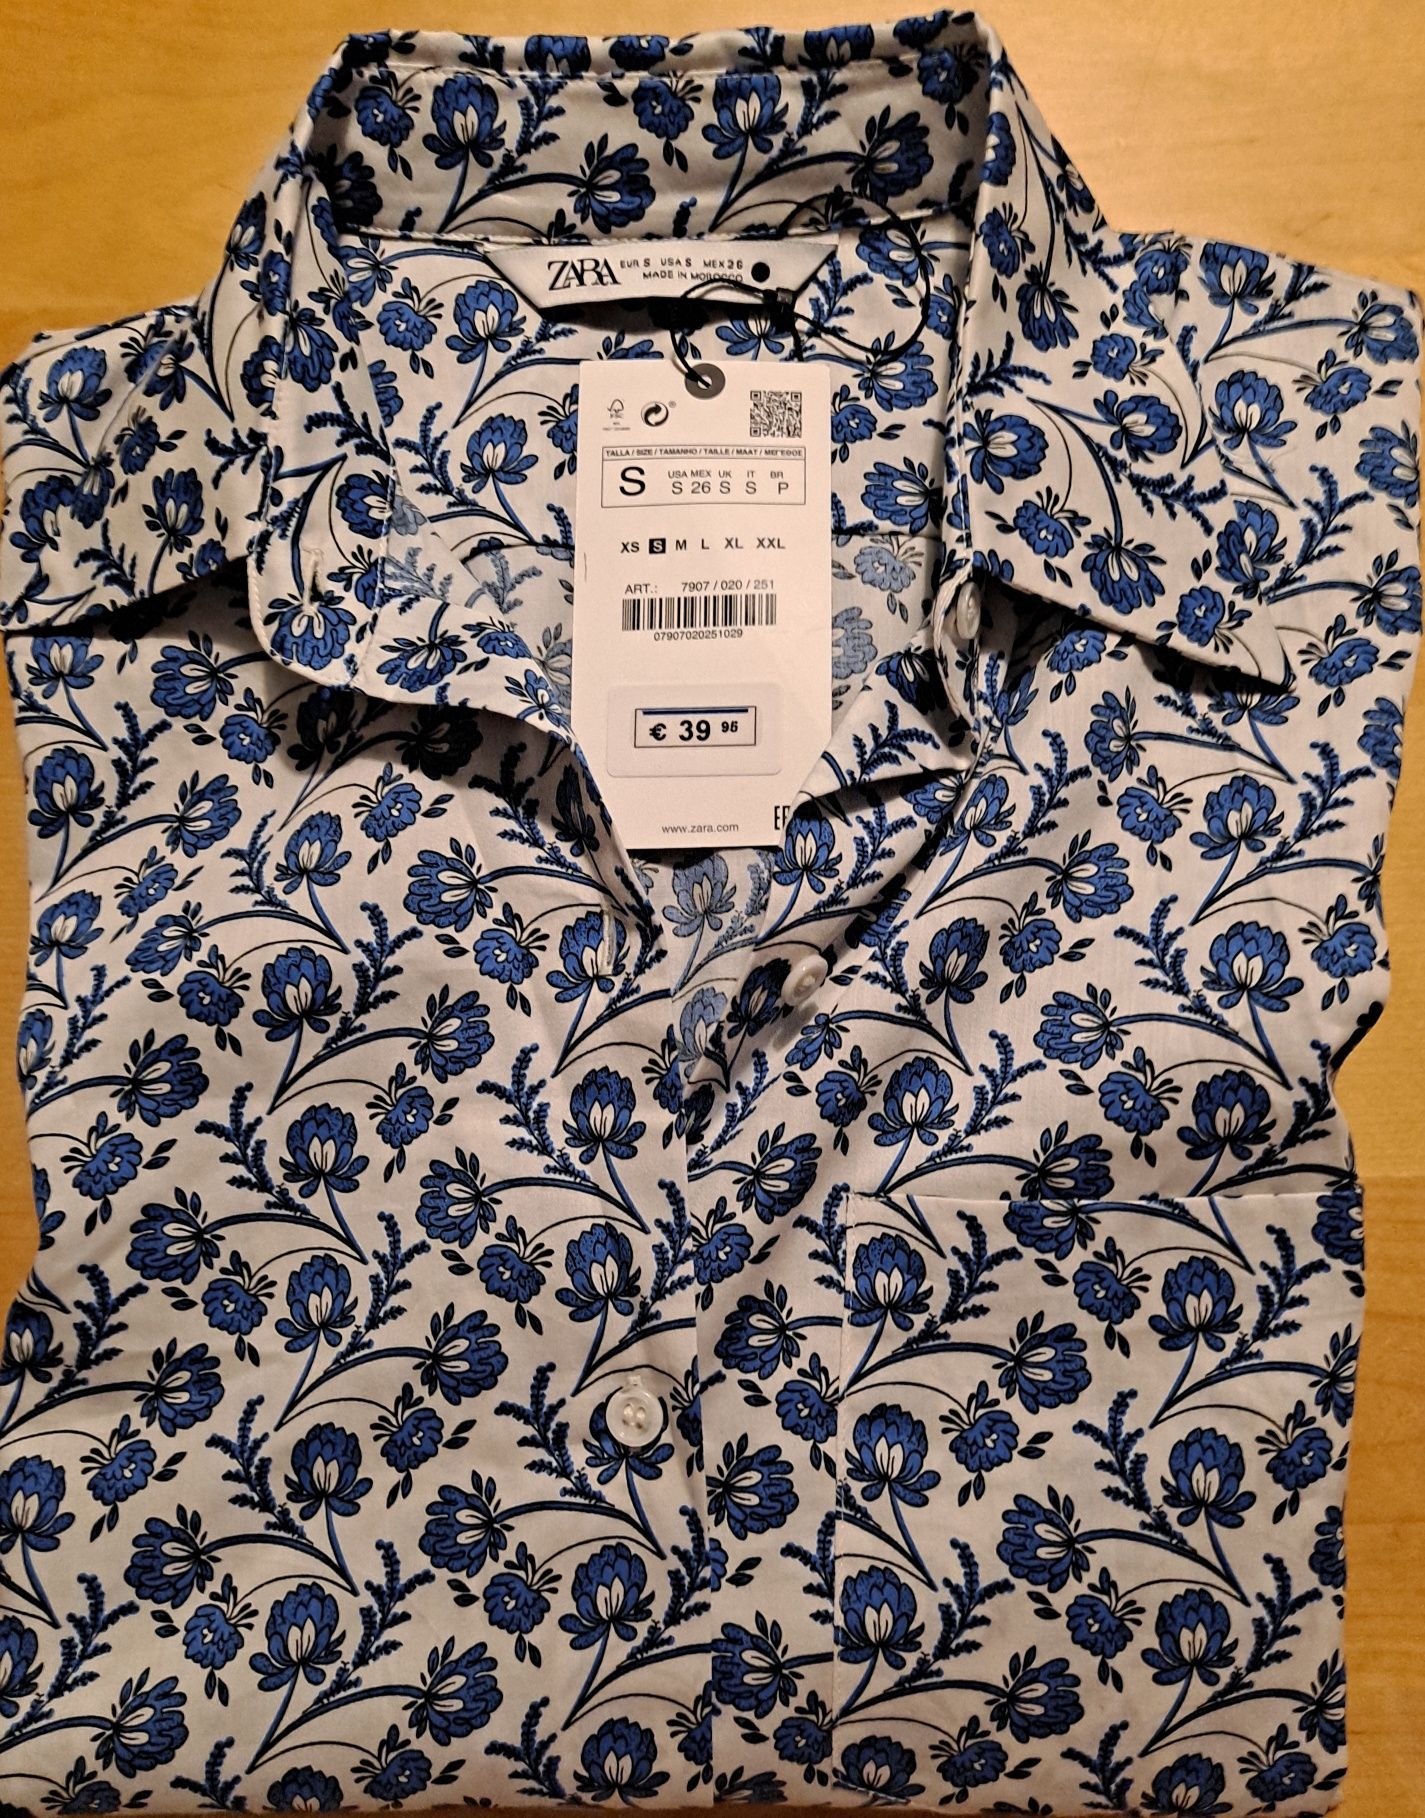 Camisa Zara manga curta